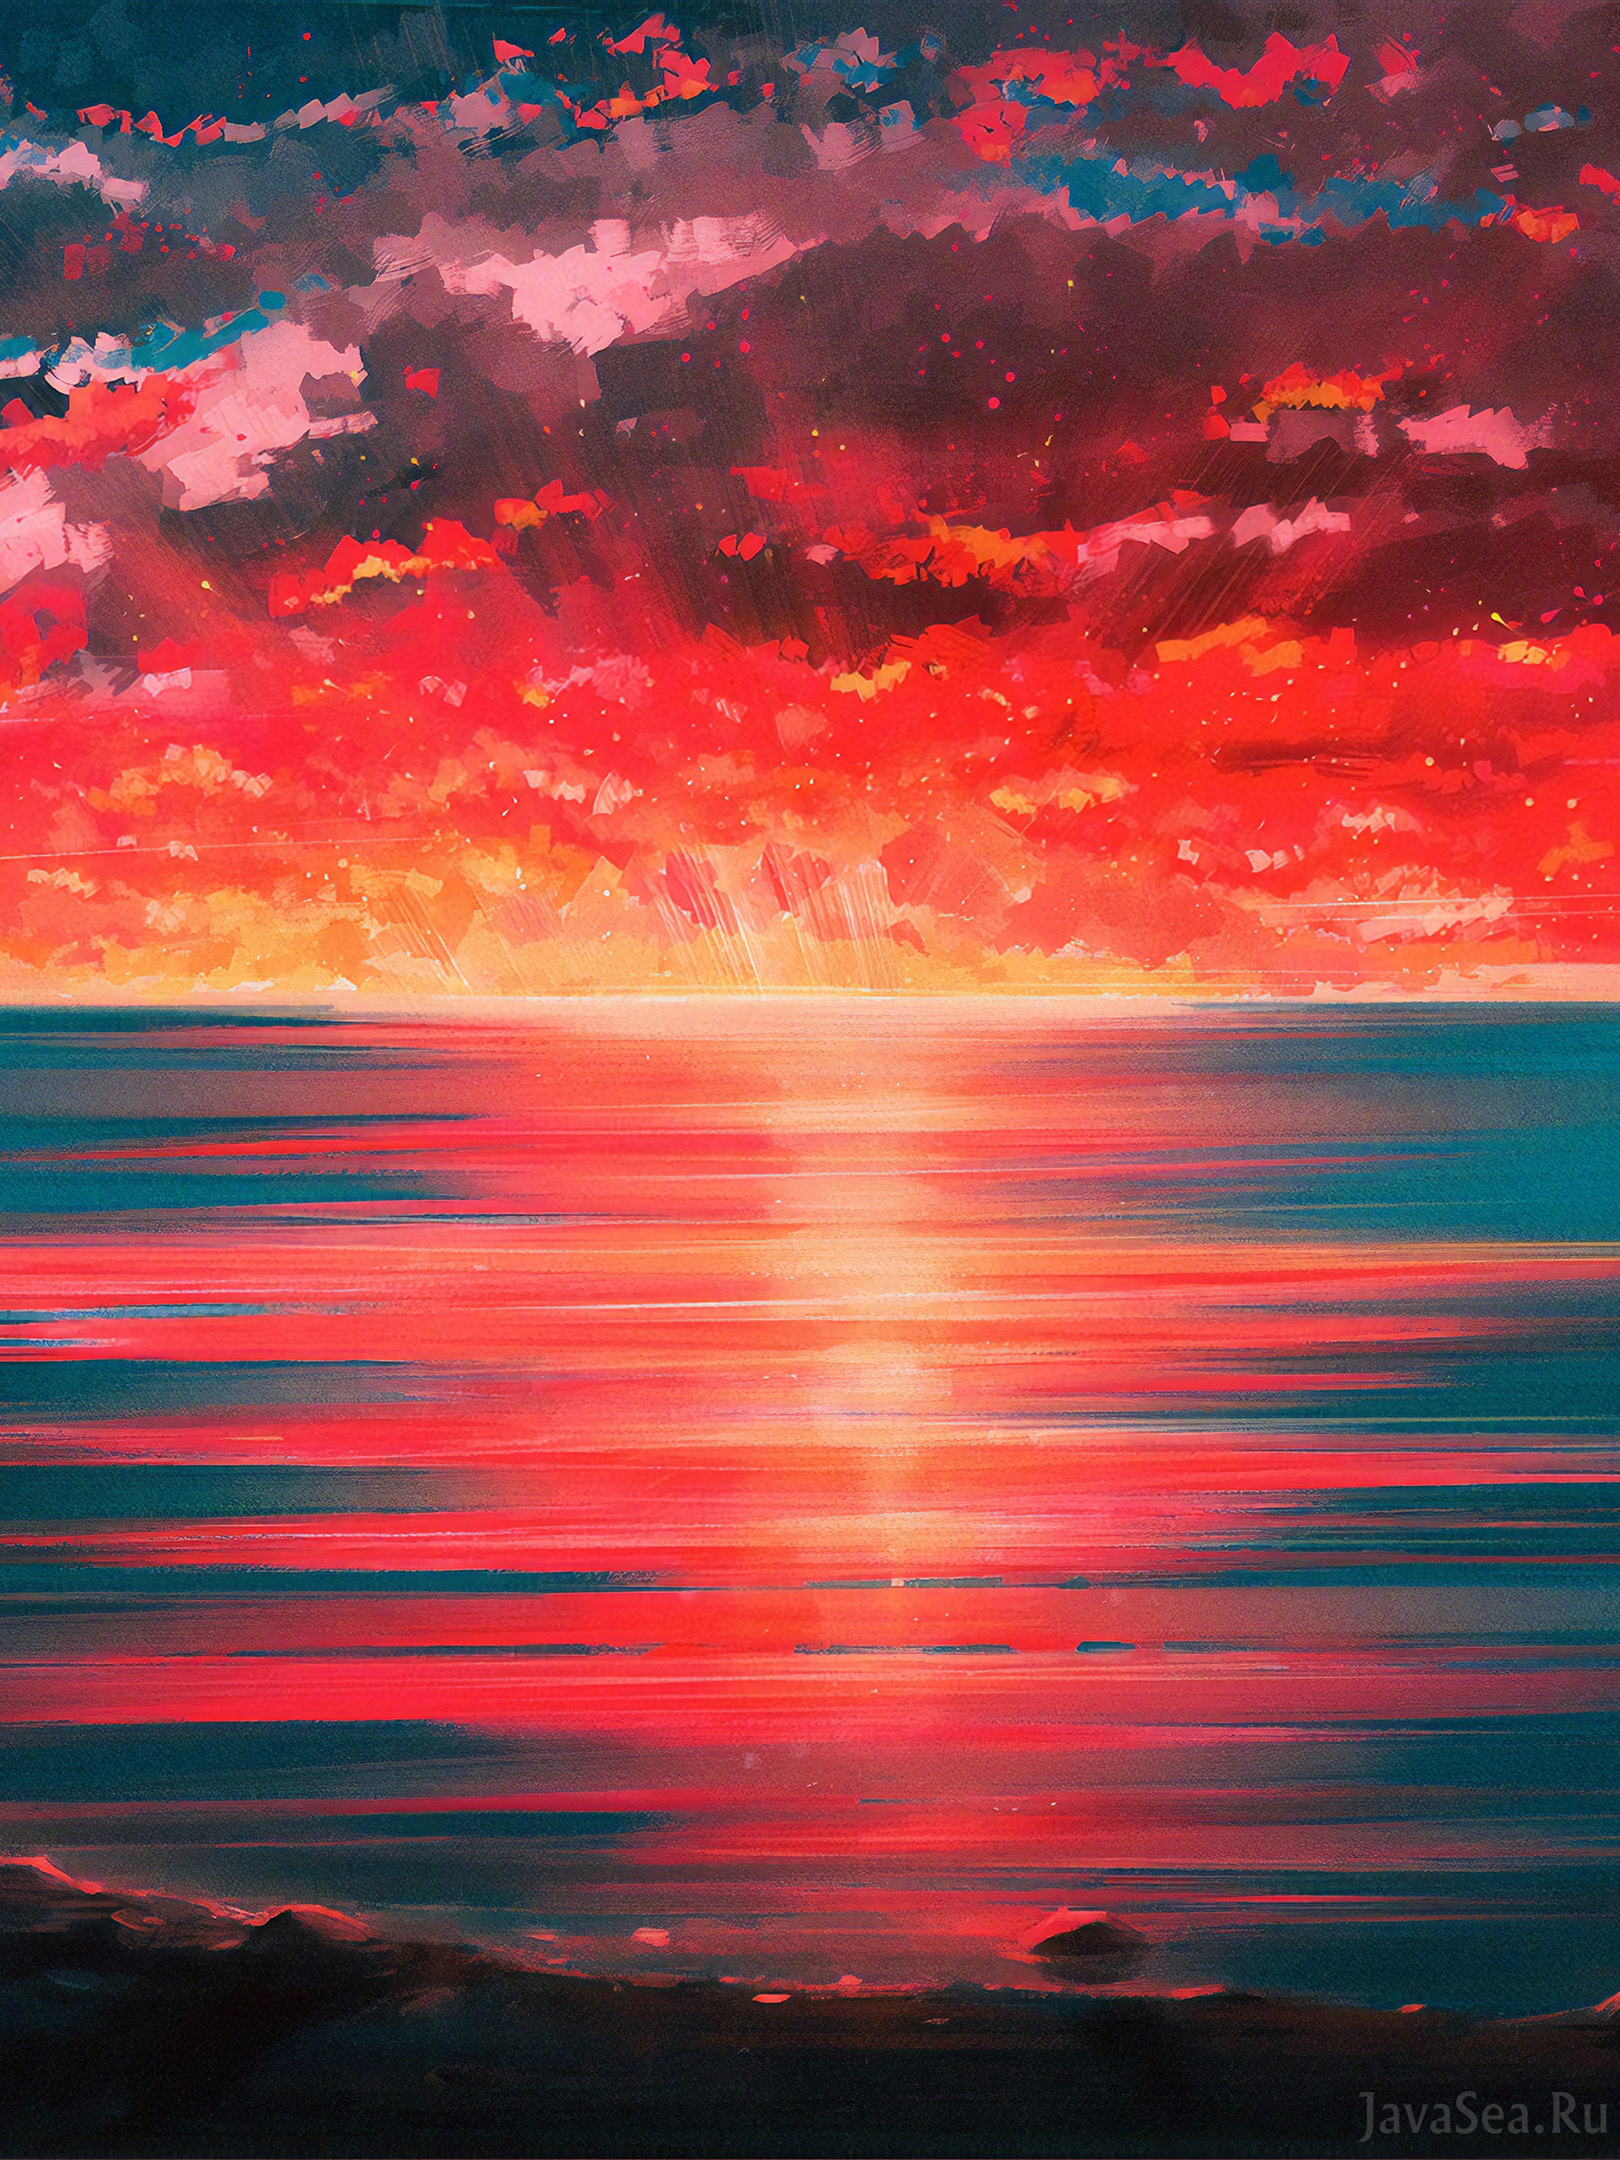 Пейзаж «Закат над морем»: пишем мастихином без разбавителей